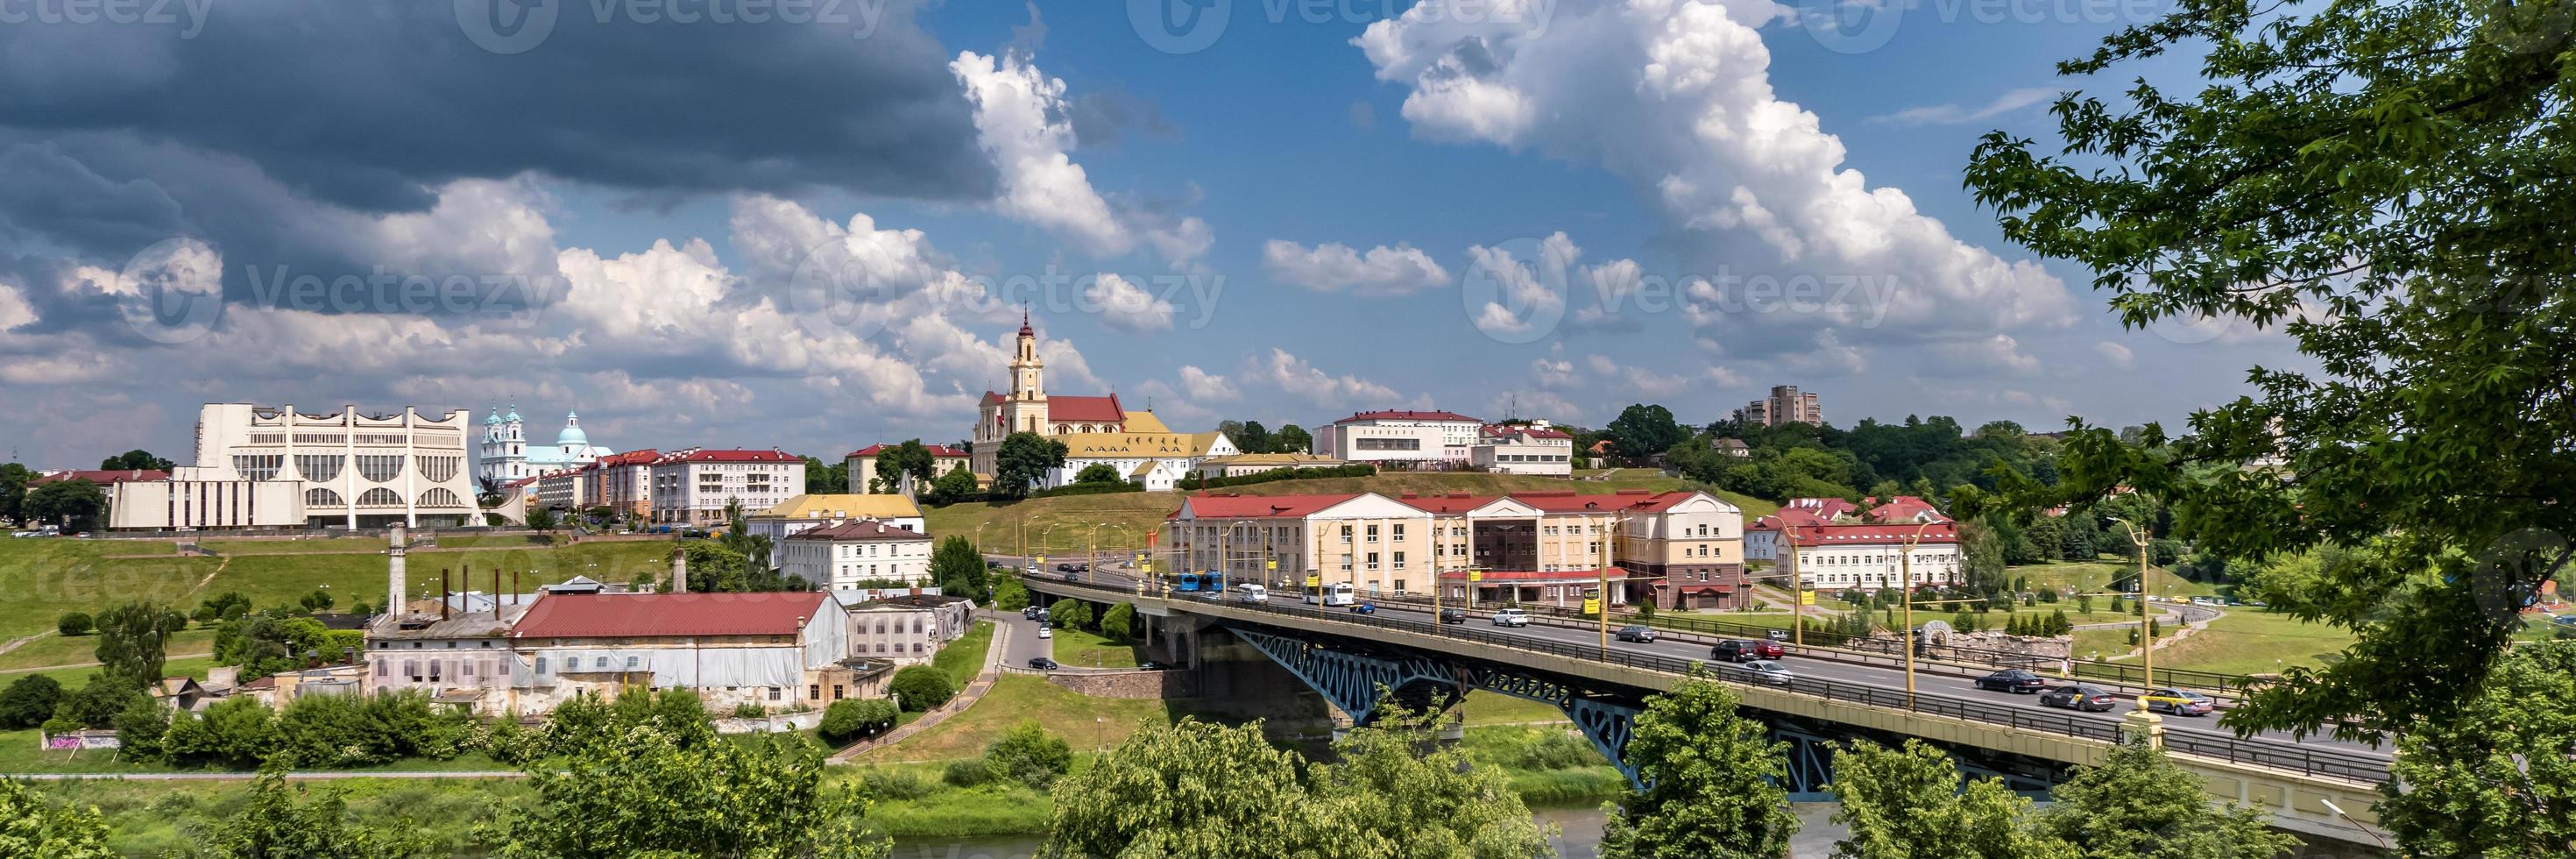 panoramapromenade met uitzicht op de oude stad en historische gebouwen van middeleeuws kasteel in de buurt van brede rivier foto